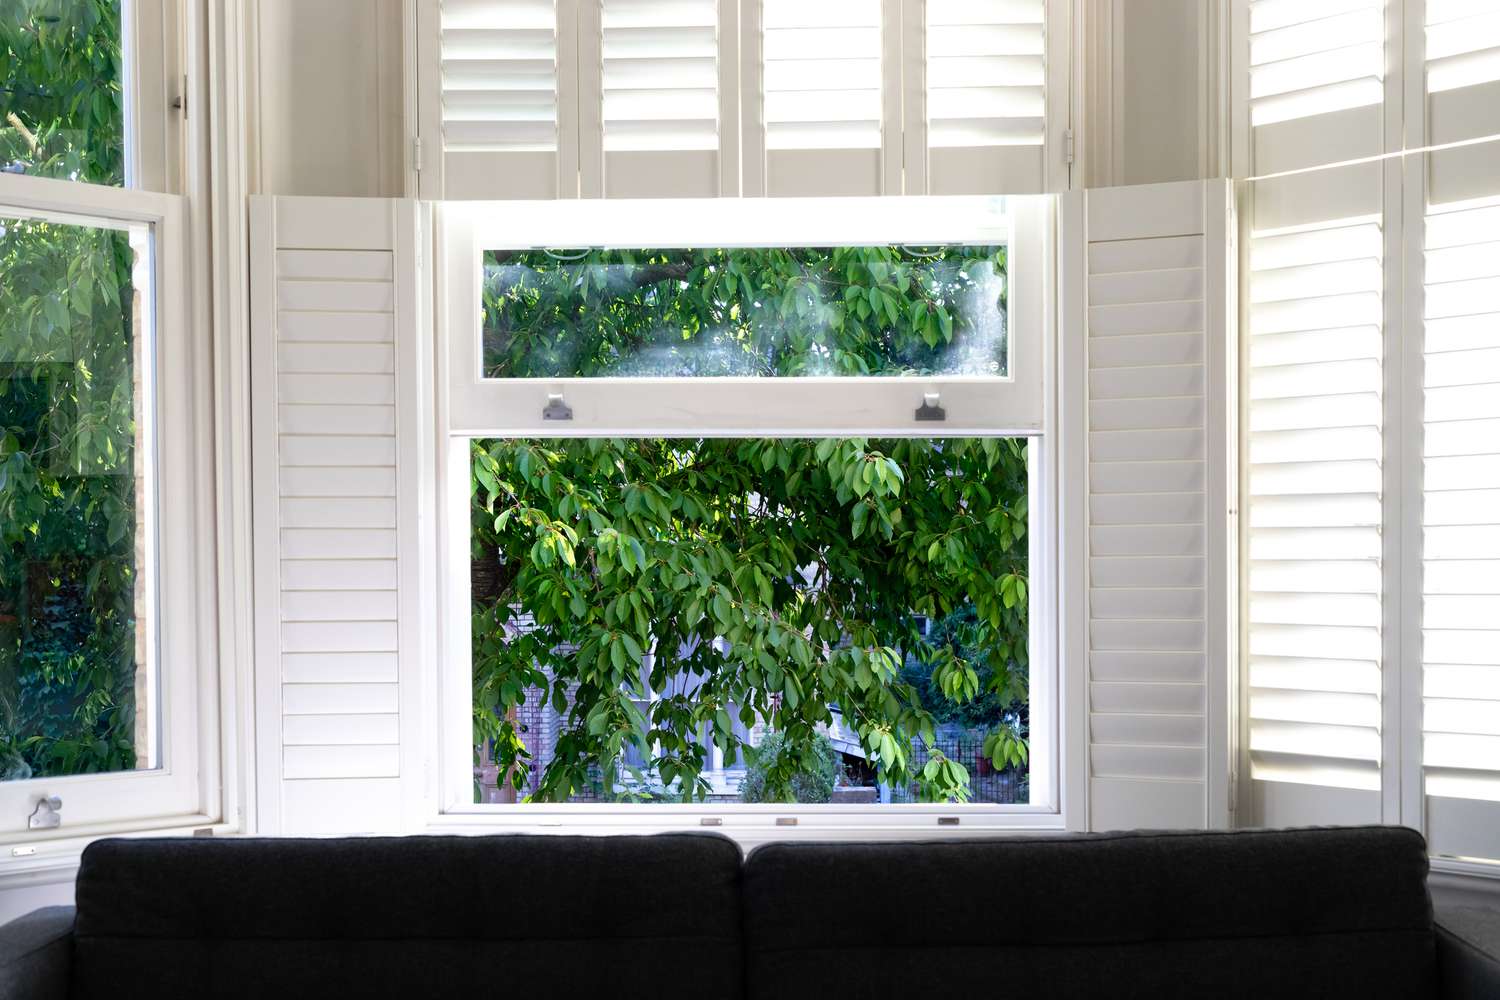 Volets en bois blanc encadrant la fenêtre avec arbre à l'extérieur